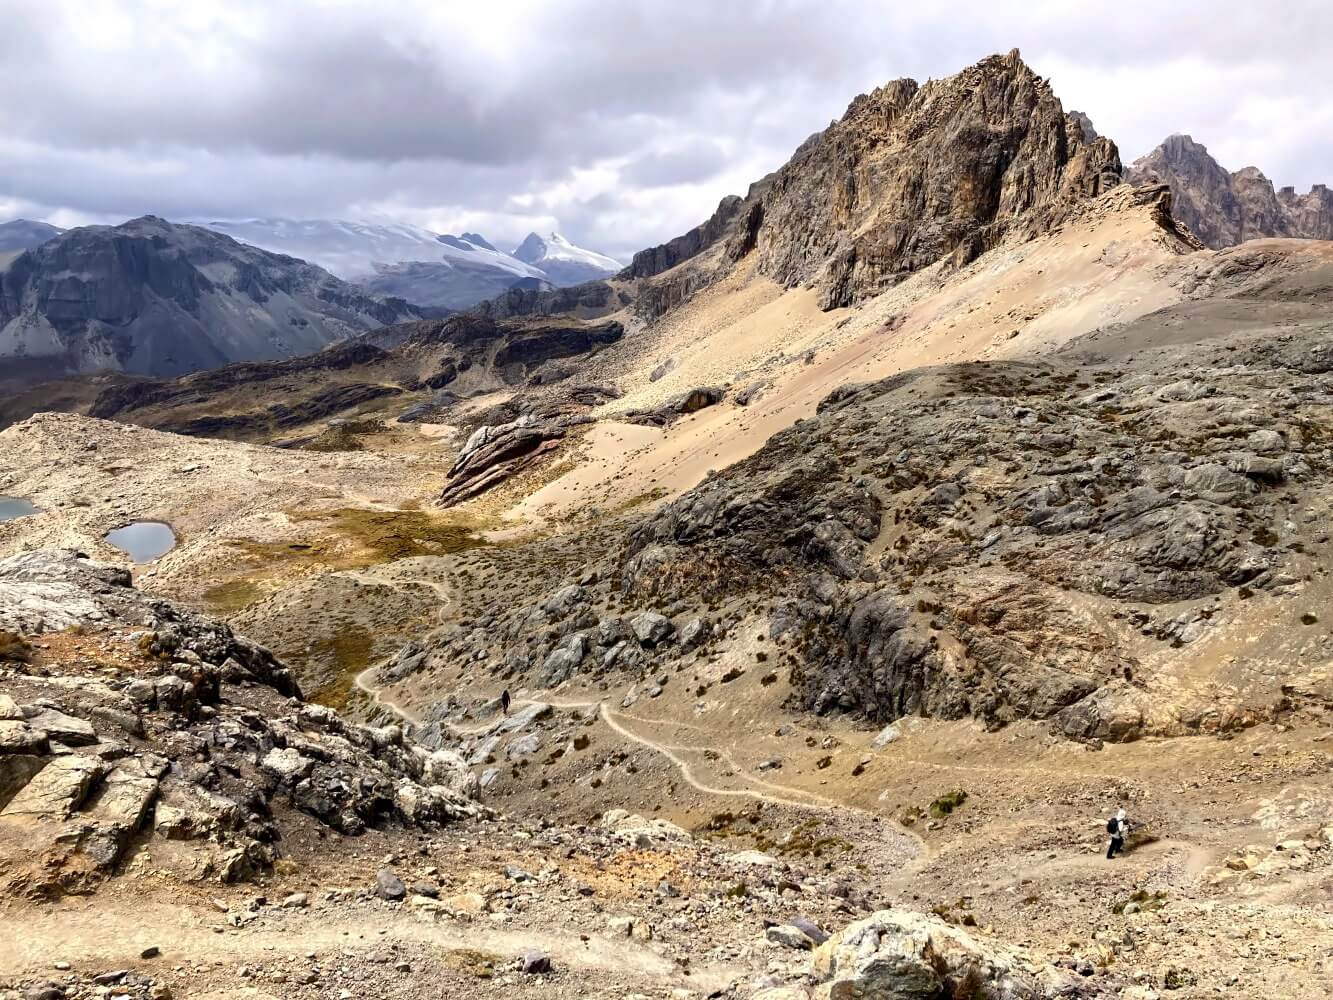 Alpiner Wanderweg auf dem Huayhuash Trek.